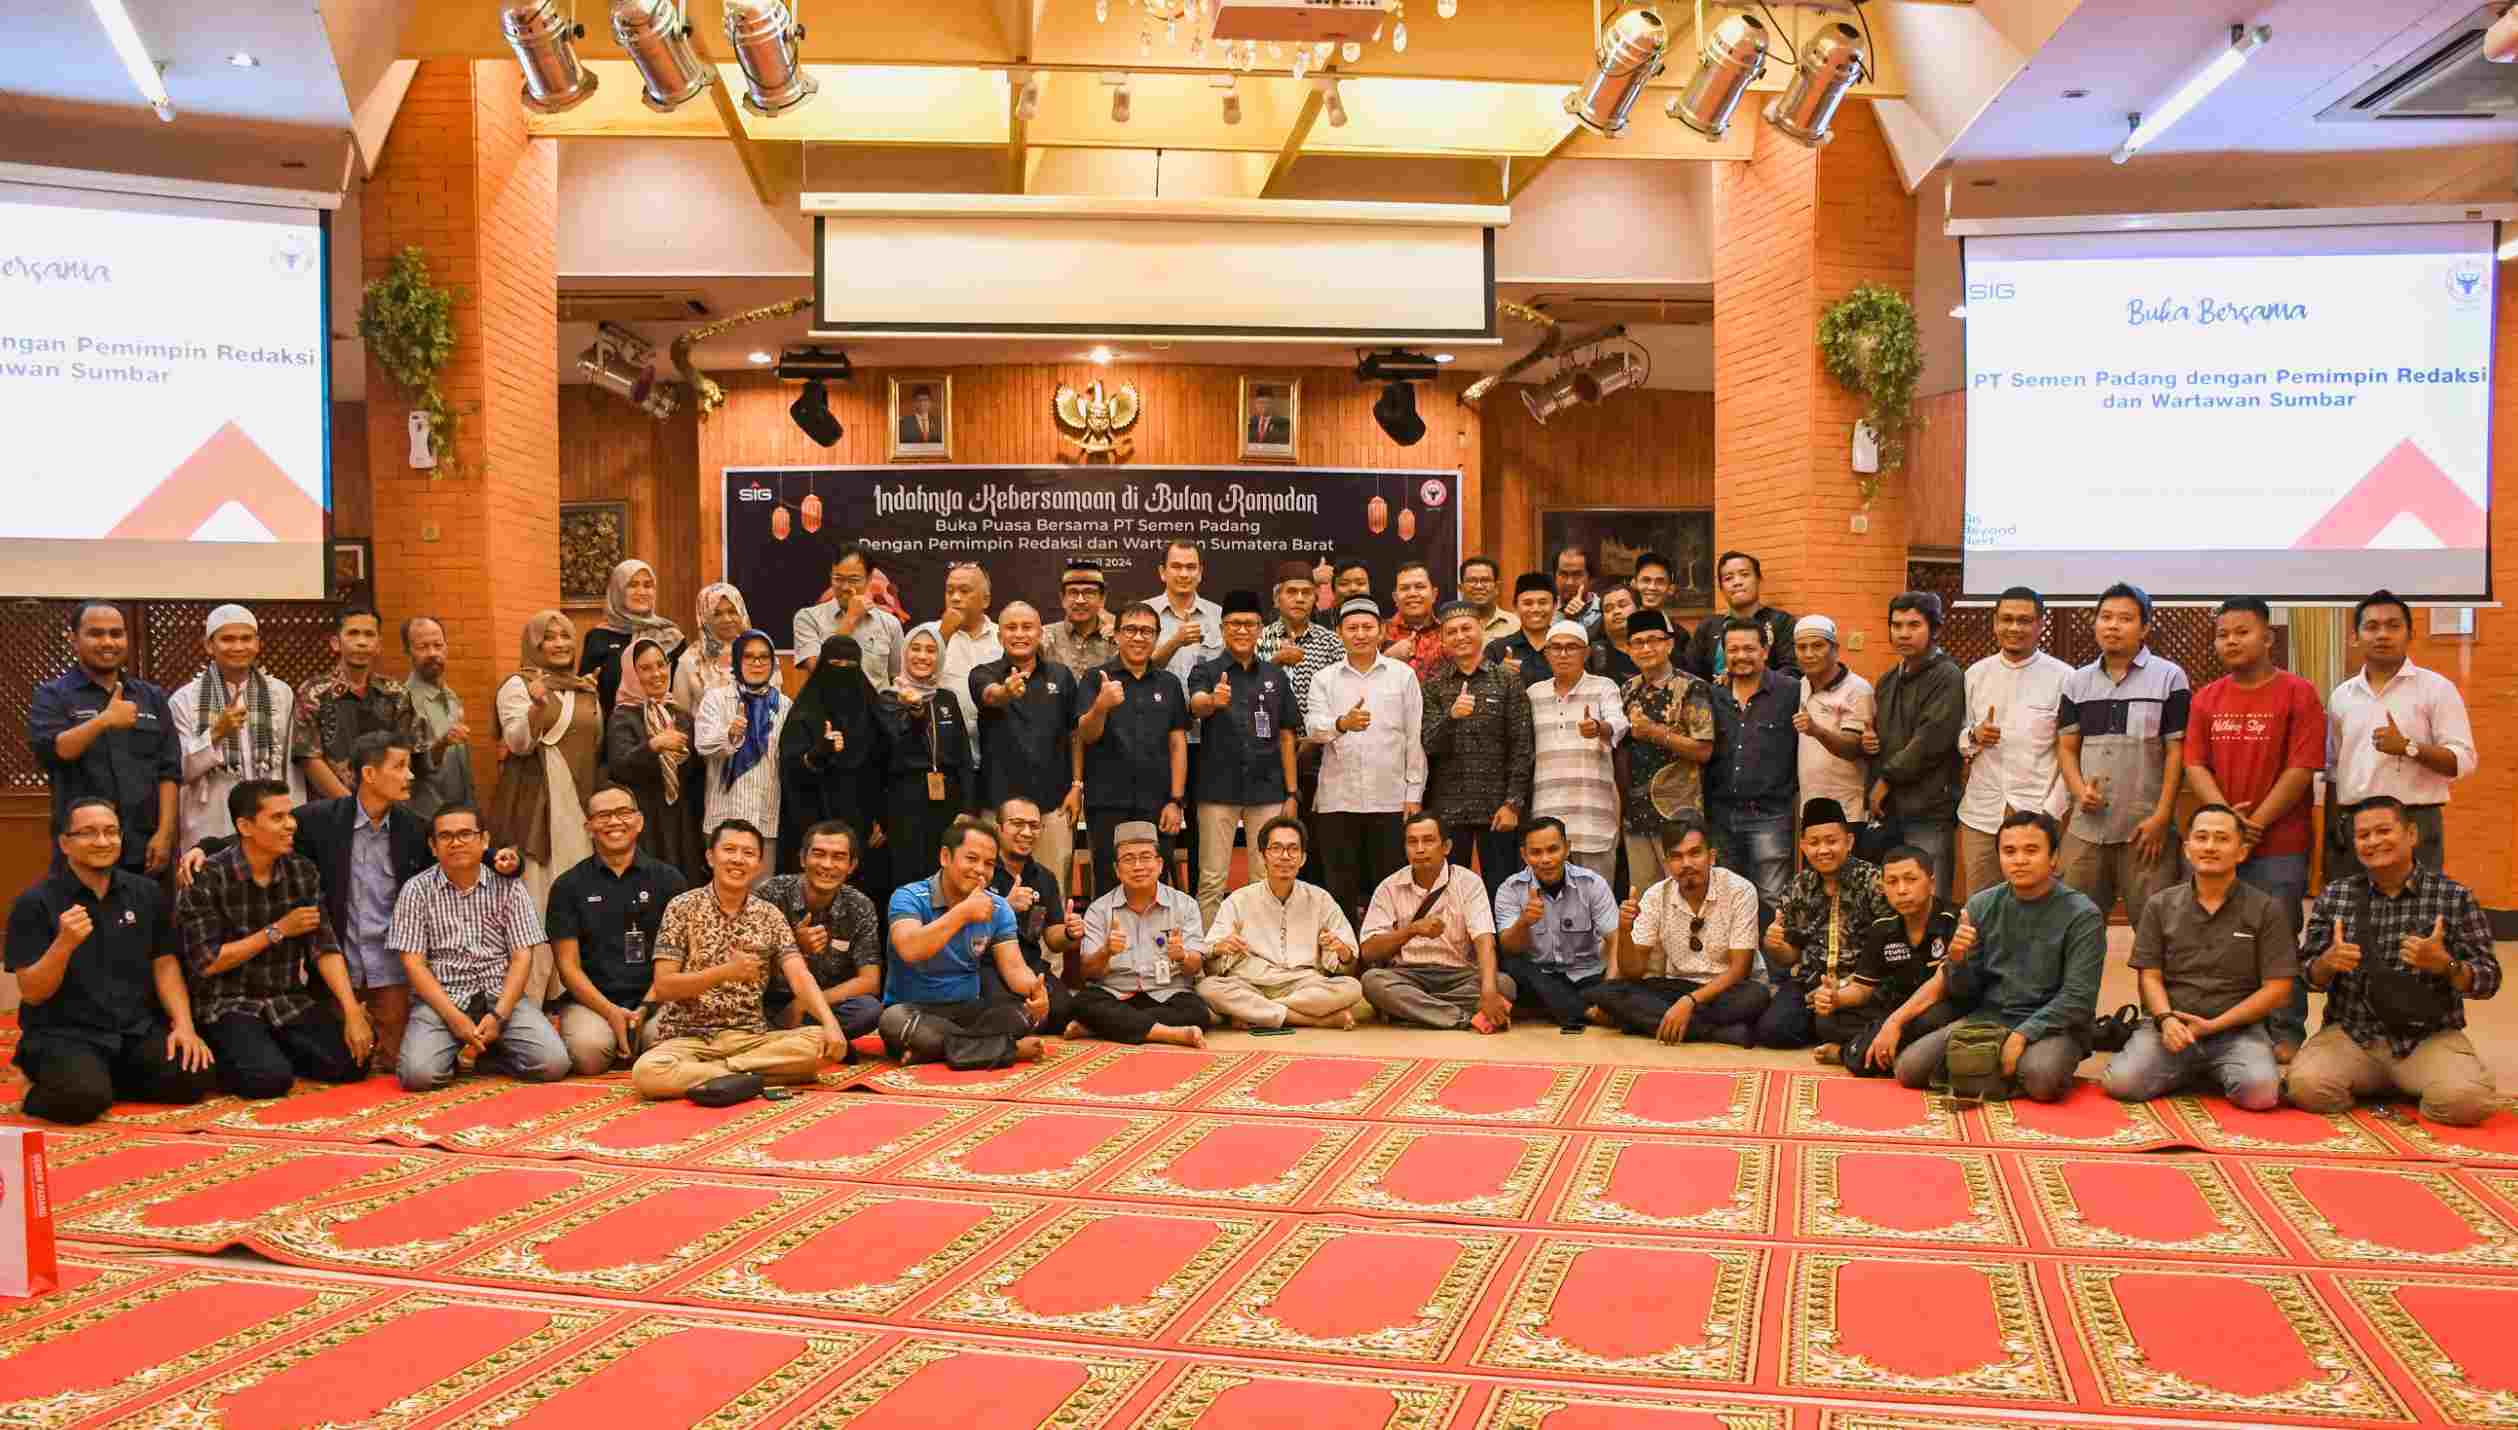 Foto Tingkatkan Ukhuwah Islamiyah di Bulan Ramadan, Semen Padang Buka Puasa Bersama dengan Media